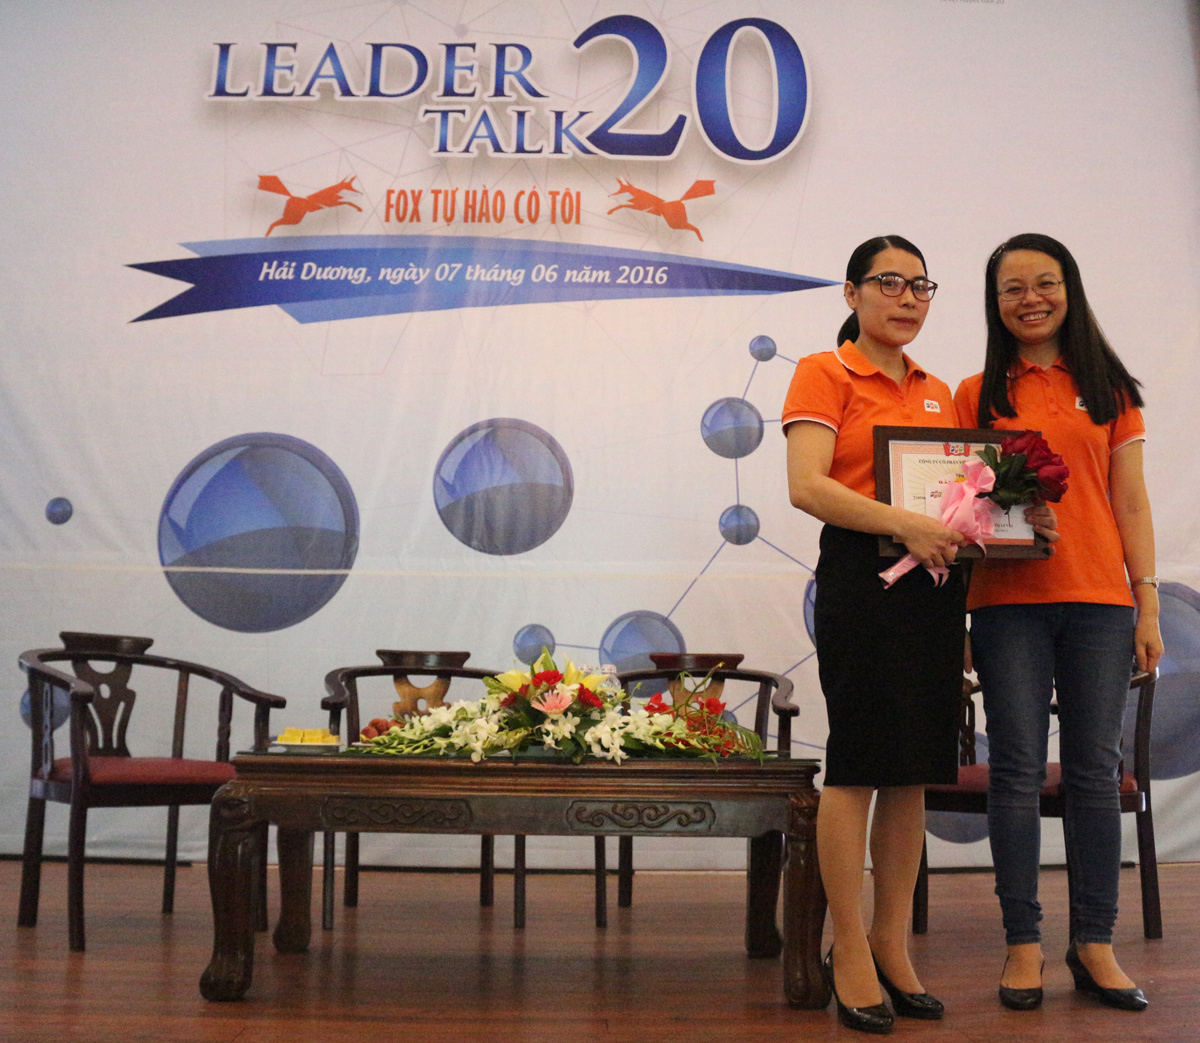 <p> Chủ tịch FPT Telecom trao bằng khen cho chị Lê Vân, Trưởng phòng Dịch vụ khách hàng chi nhánh Hải Dương, người đã có thành tích xuất sắc trong công việc. Chị là người khéo léo, rất giỏi trong việc xử lý tình huống với các khách hàng khó tính.</p>